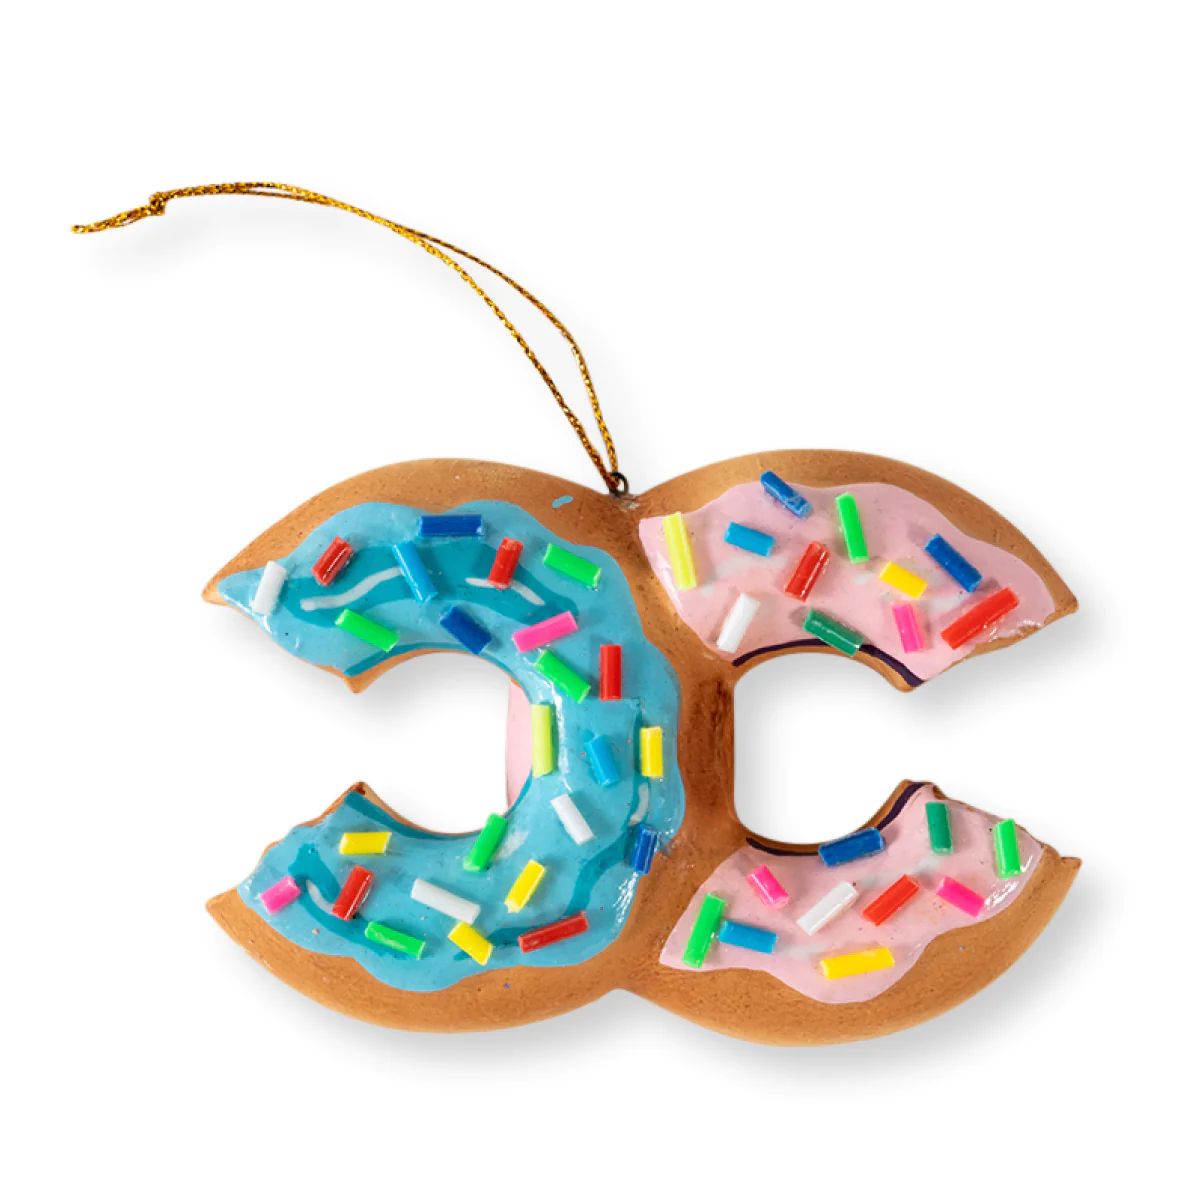 Furbish Studio - Fancy Donut Ornament | Furbish Studio